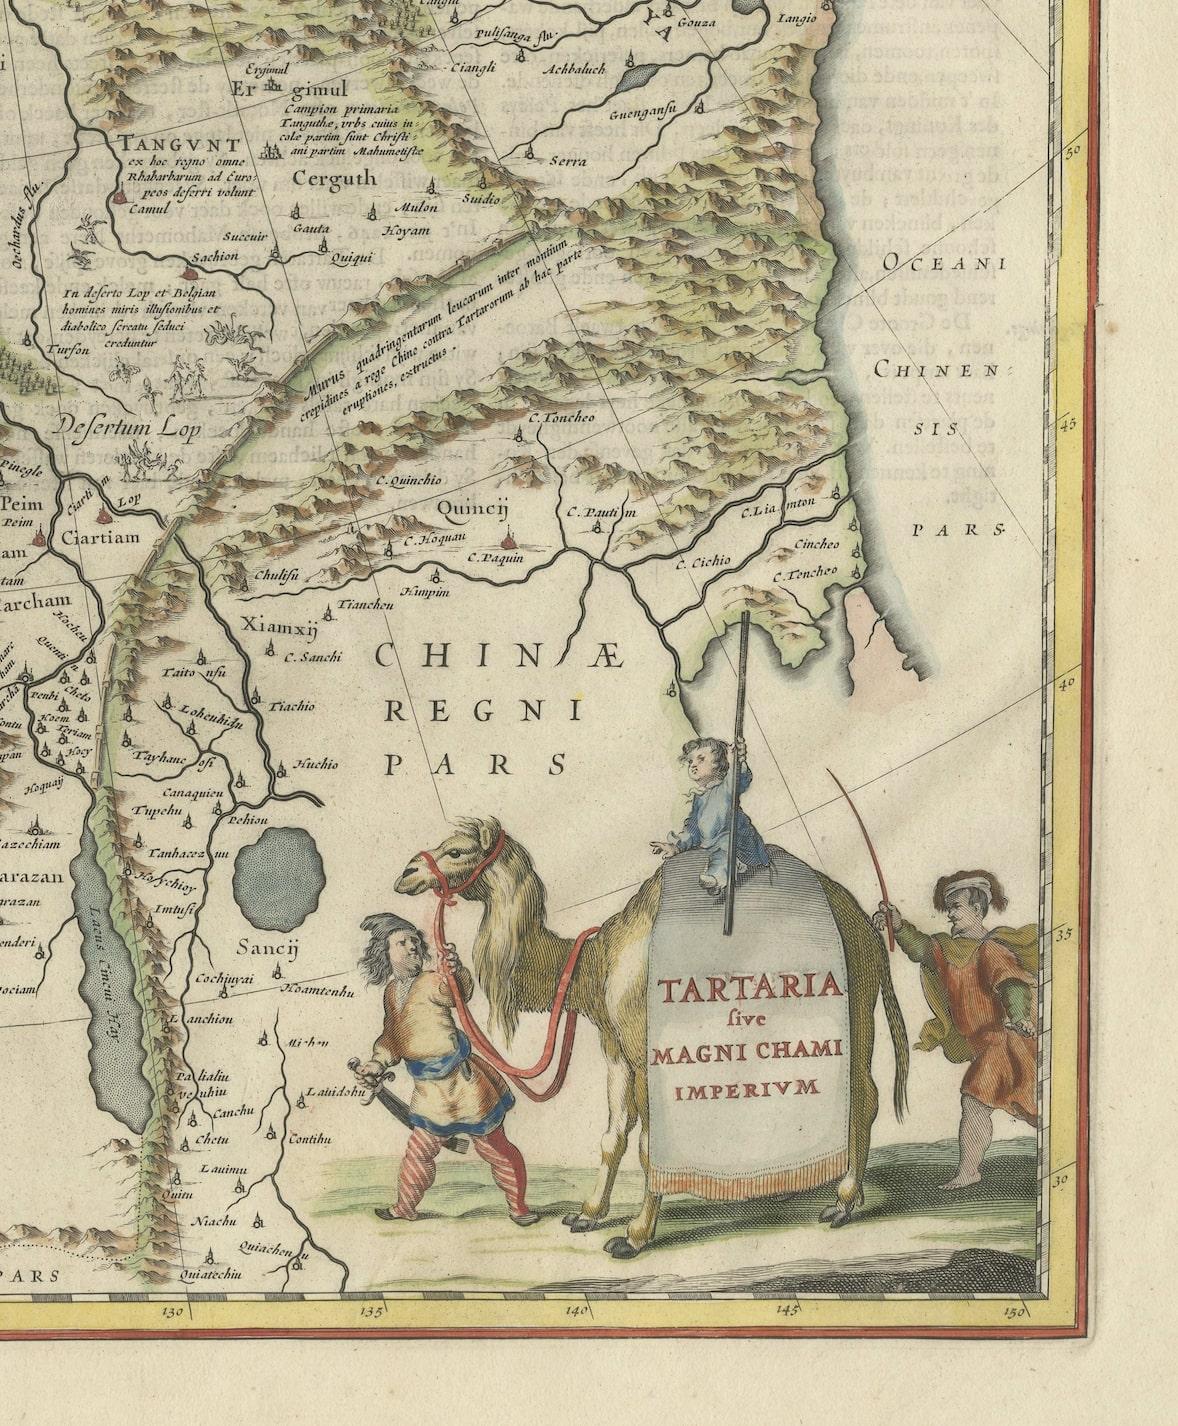 old maps of tartaria